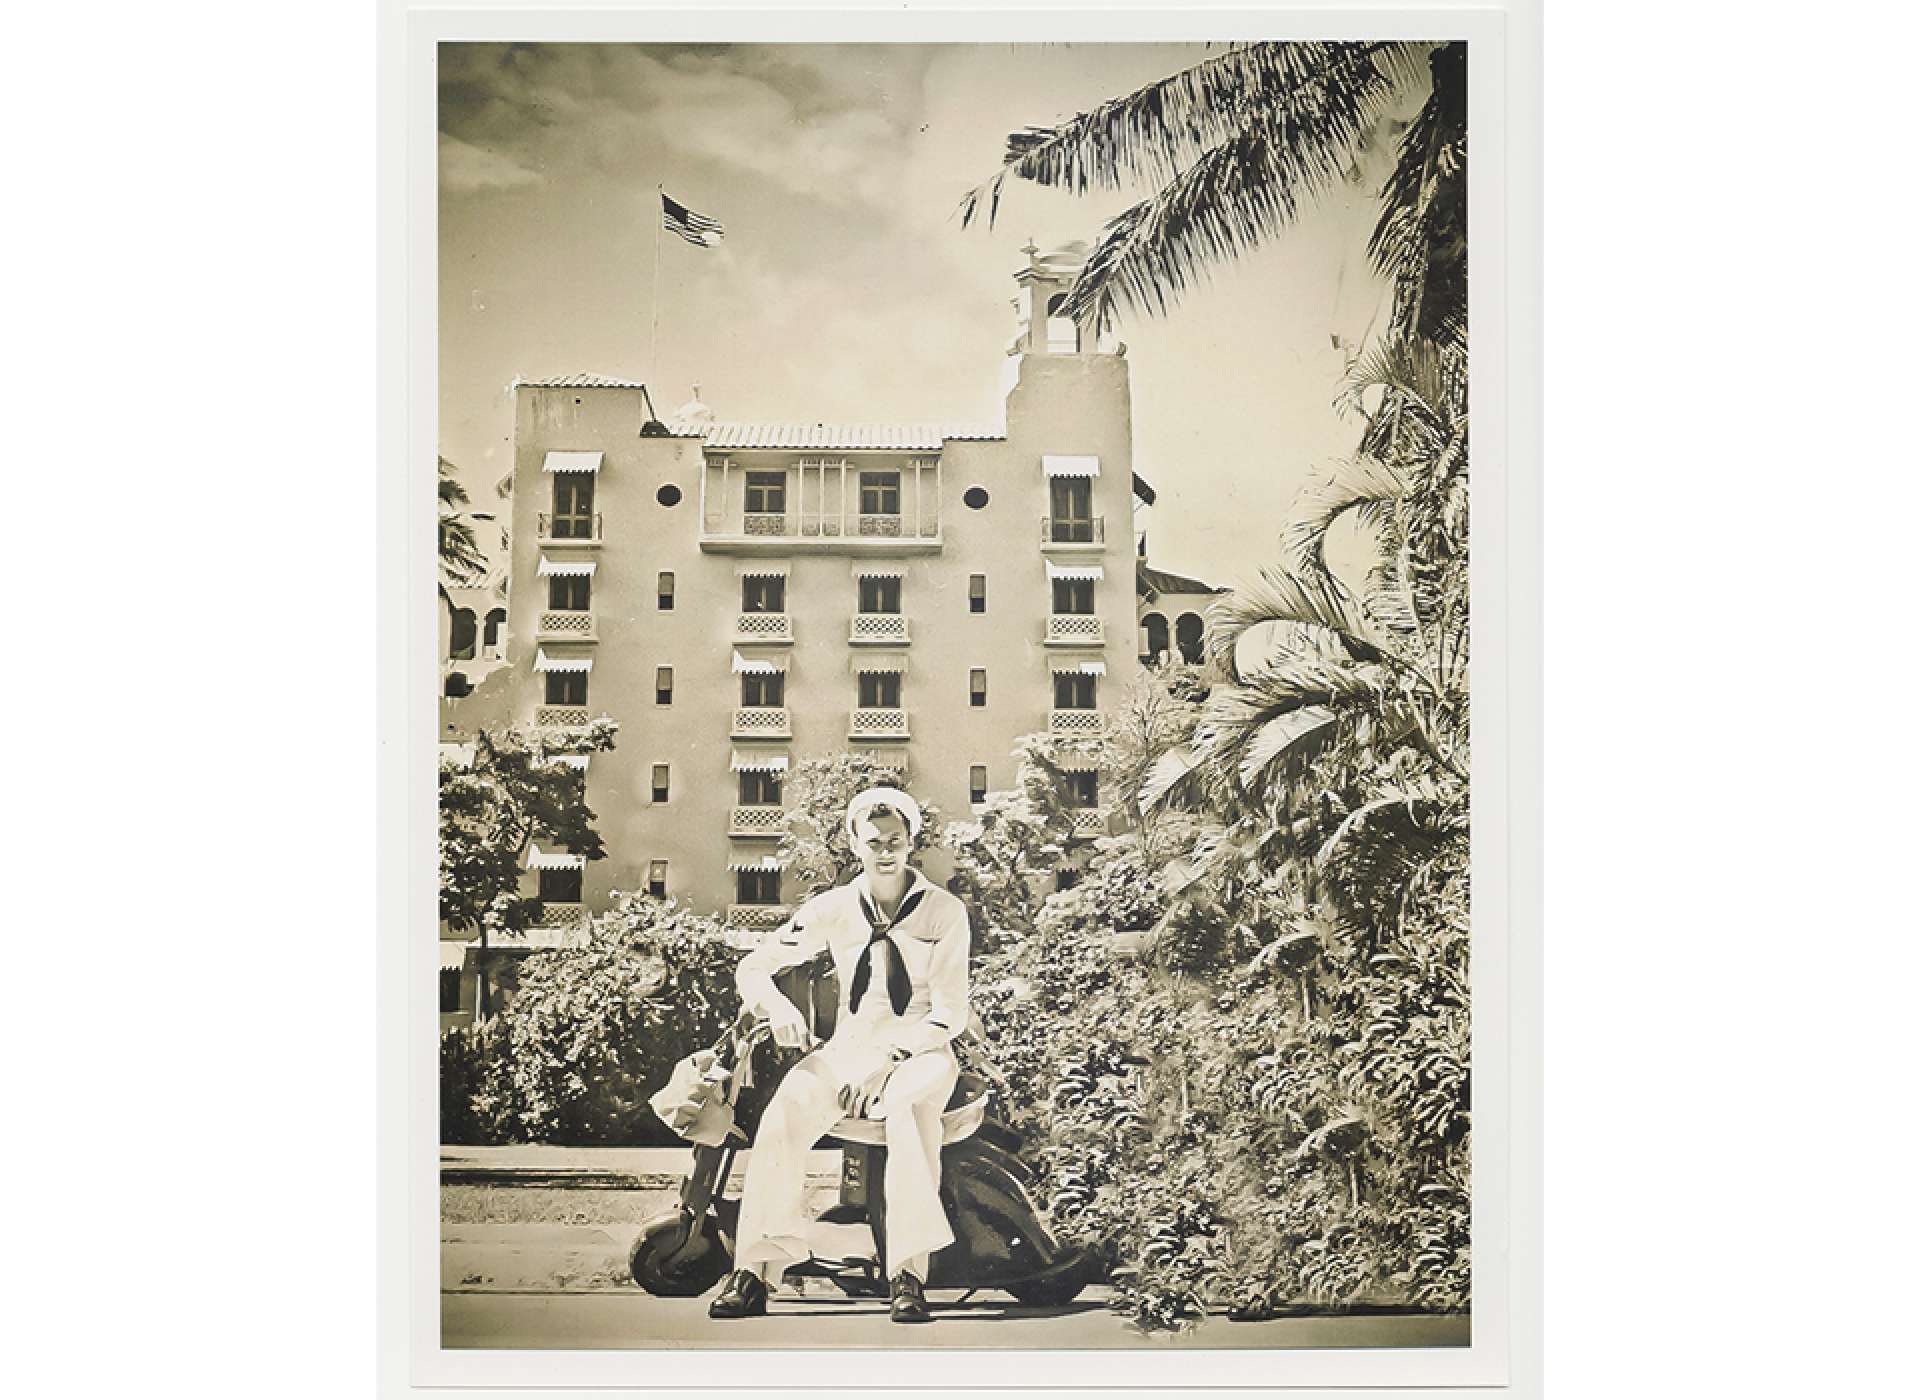 Gunner’s Mate James White photographed near the Royal Hawaiian Hotel on Waikiki Beach